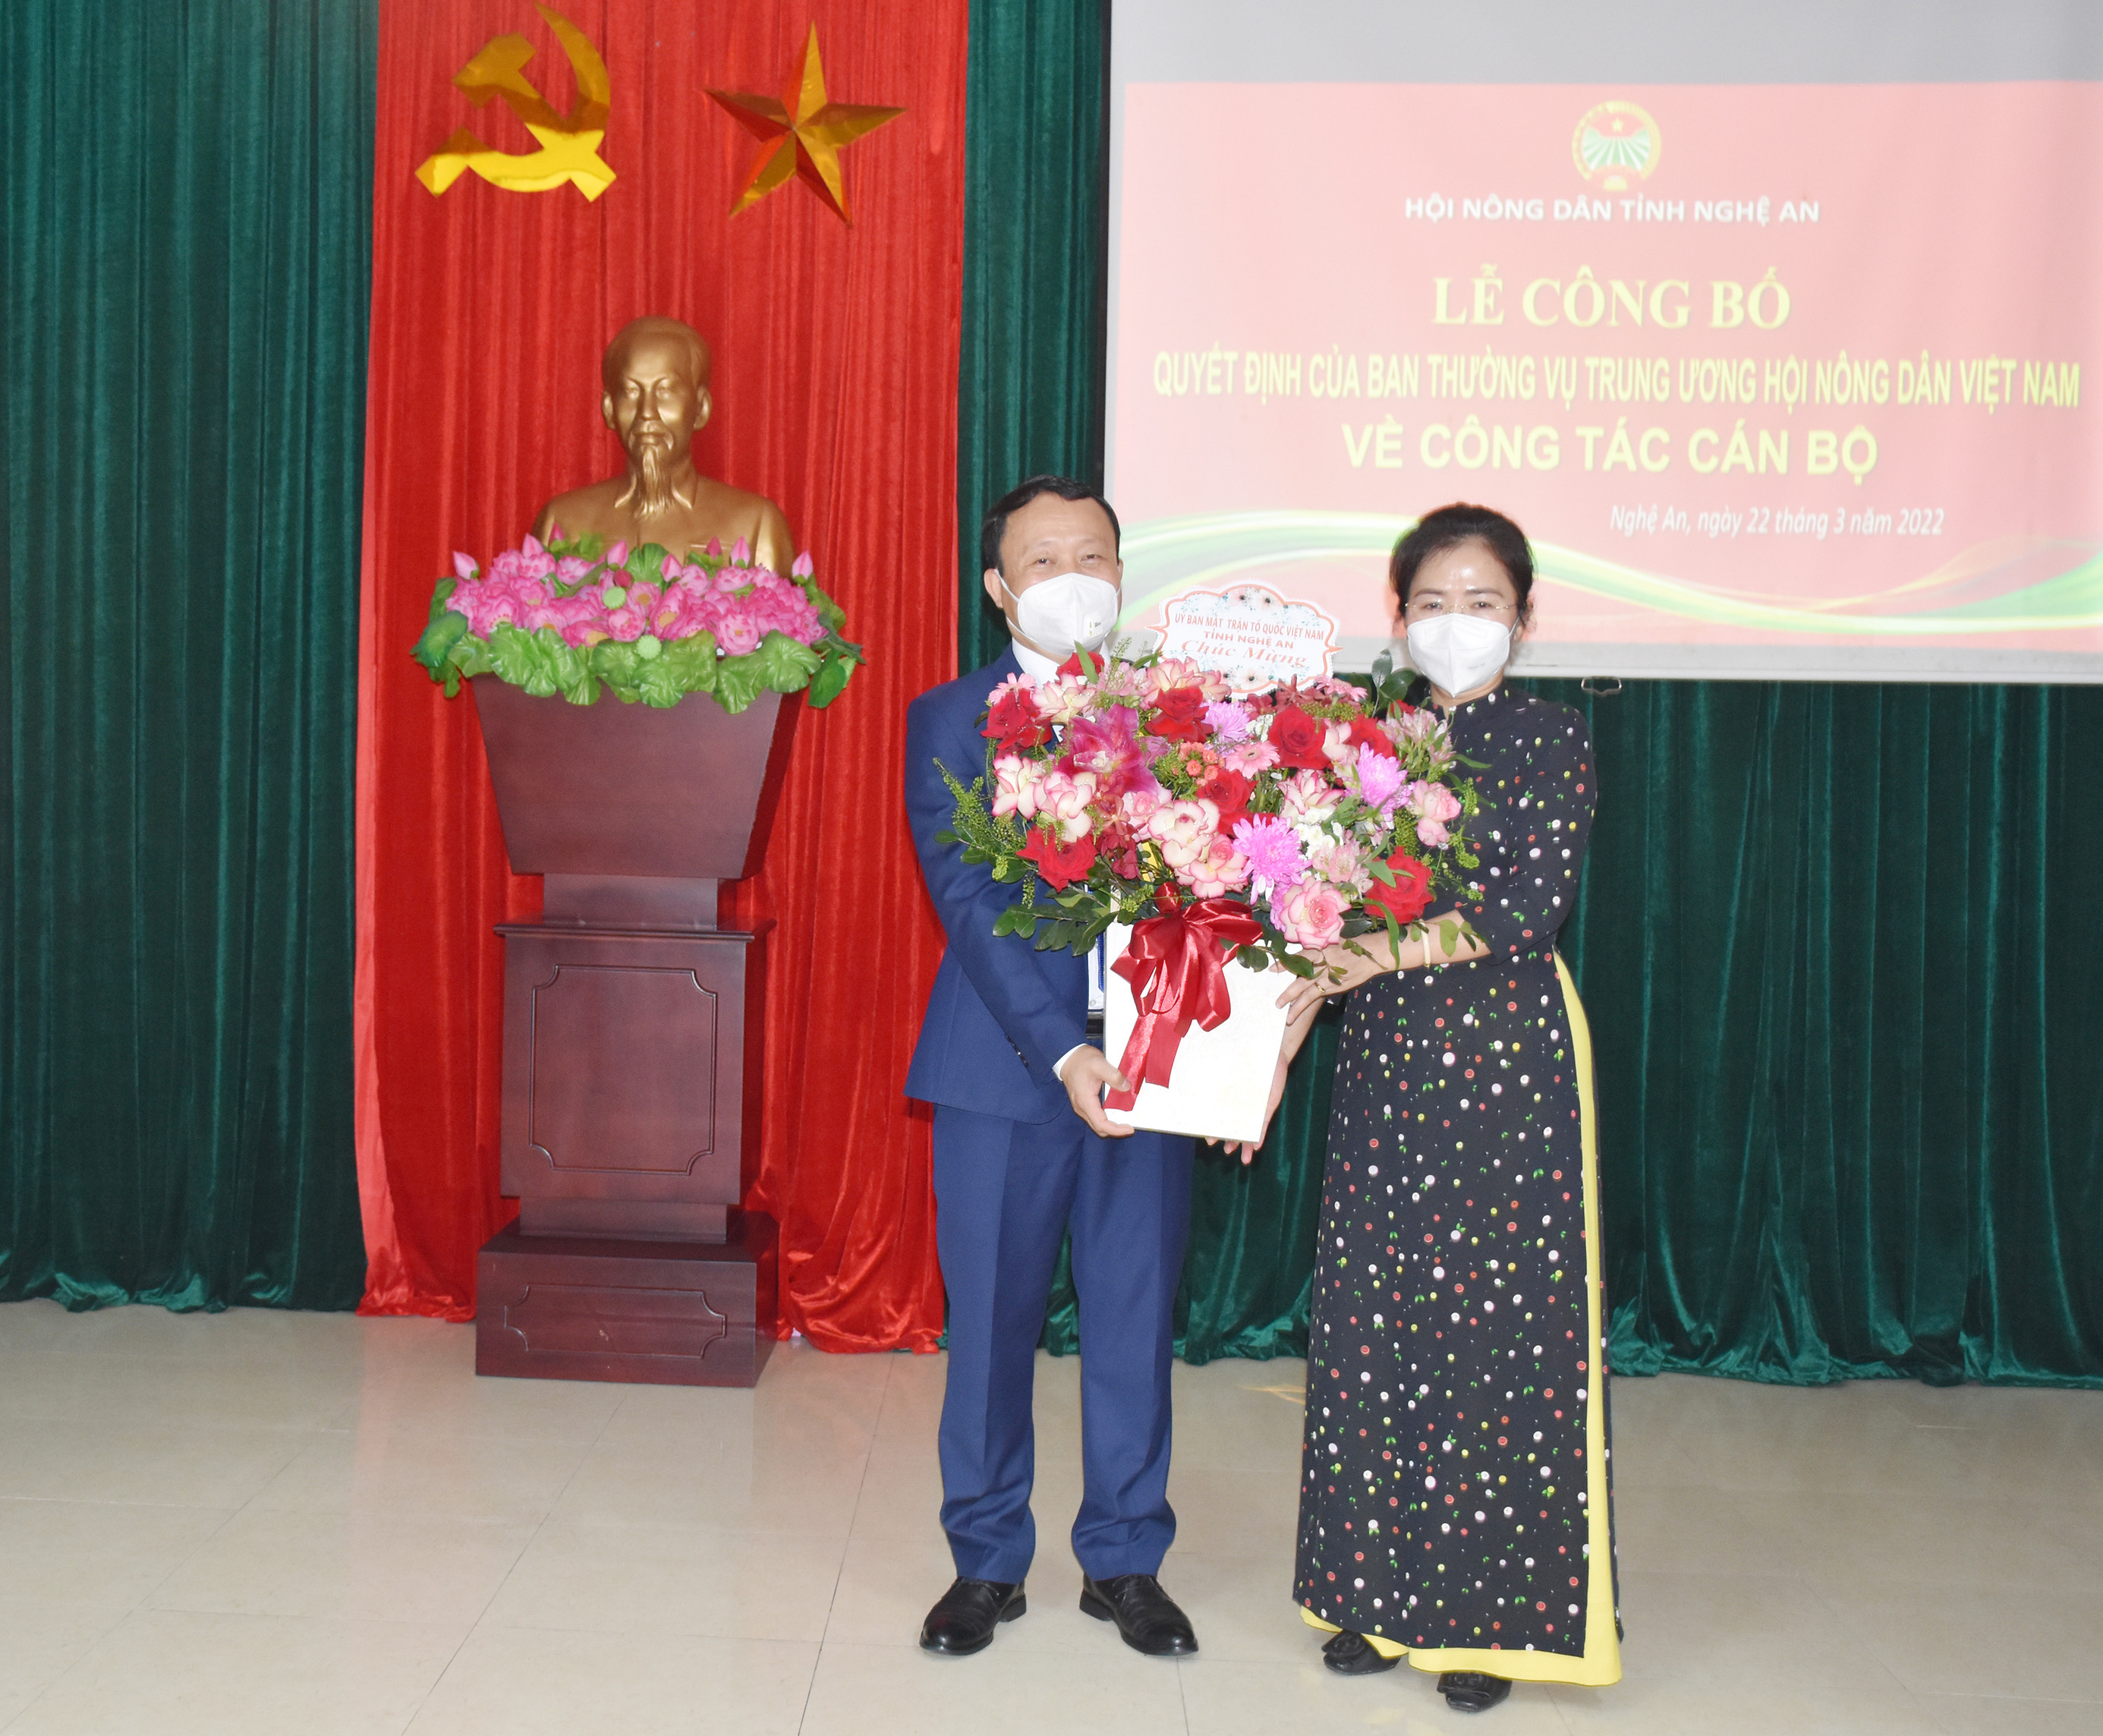 Đồng chí Võ Thị Minh Sinh - Chủ tịch Ủy ban MTTQ tỉnh Nghệ An tặng hoa chúc mừng đồng chí Võ Văn Phong. Ảnh: Thanh Lê